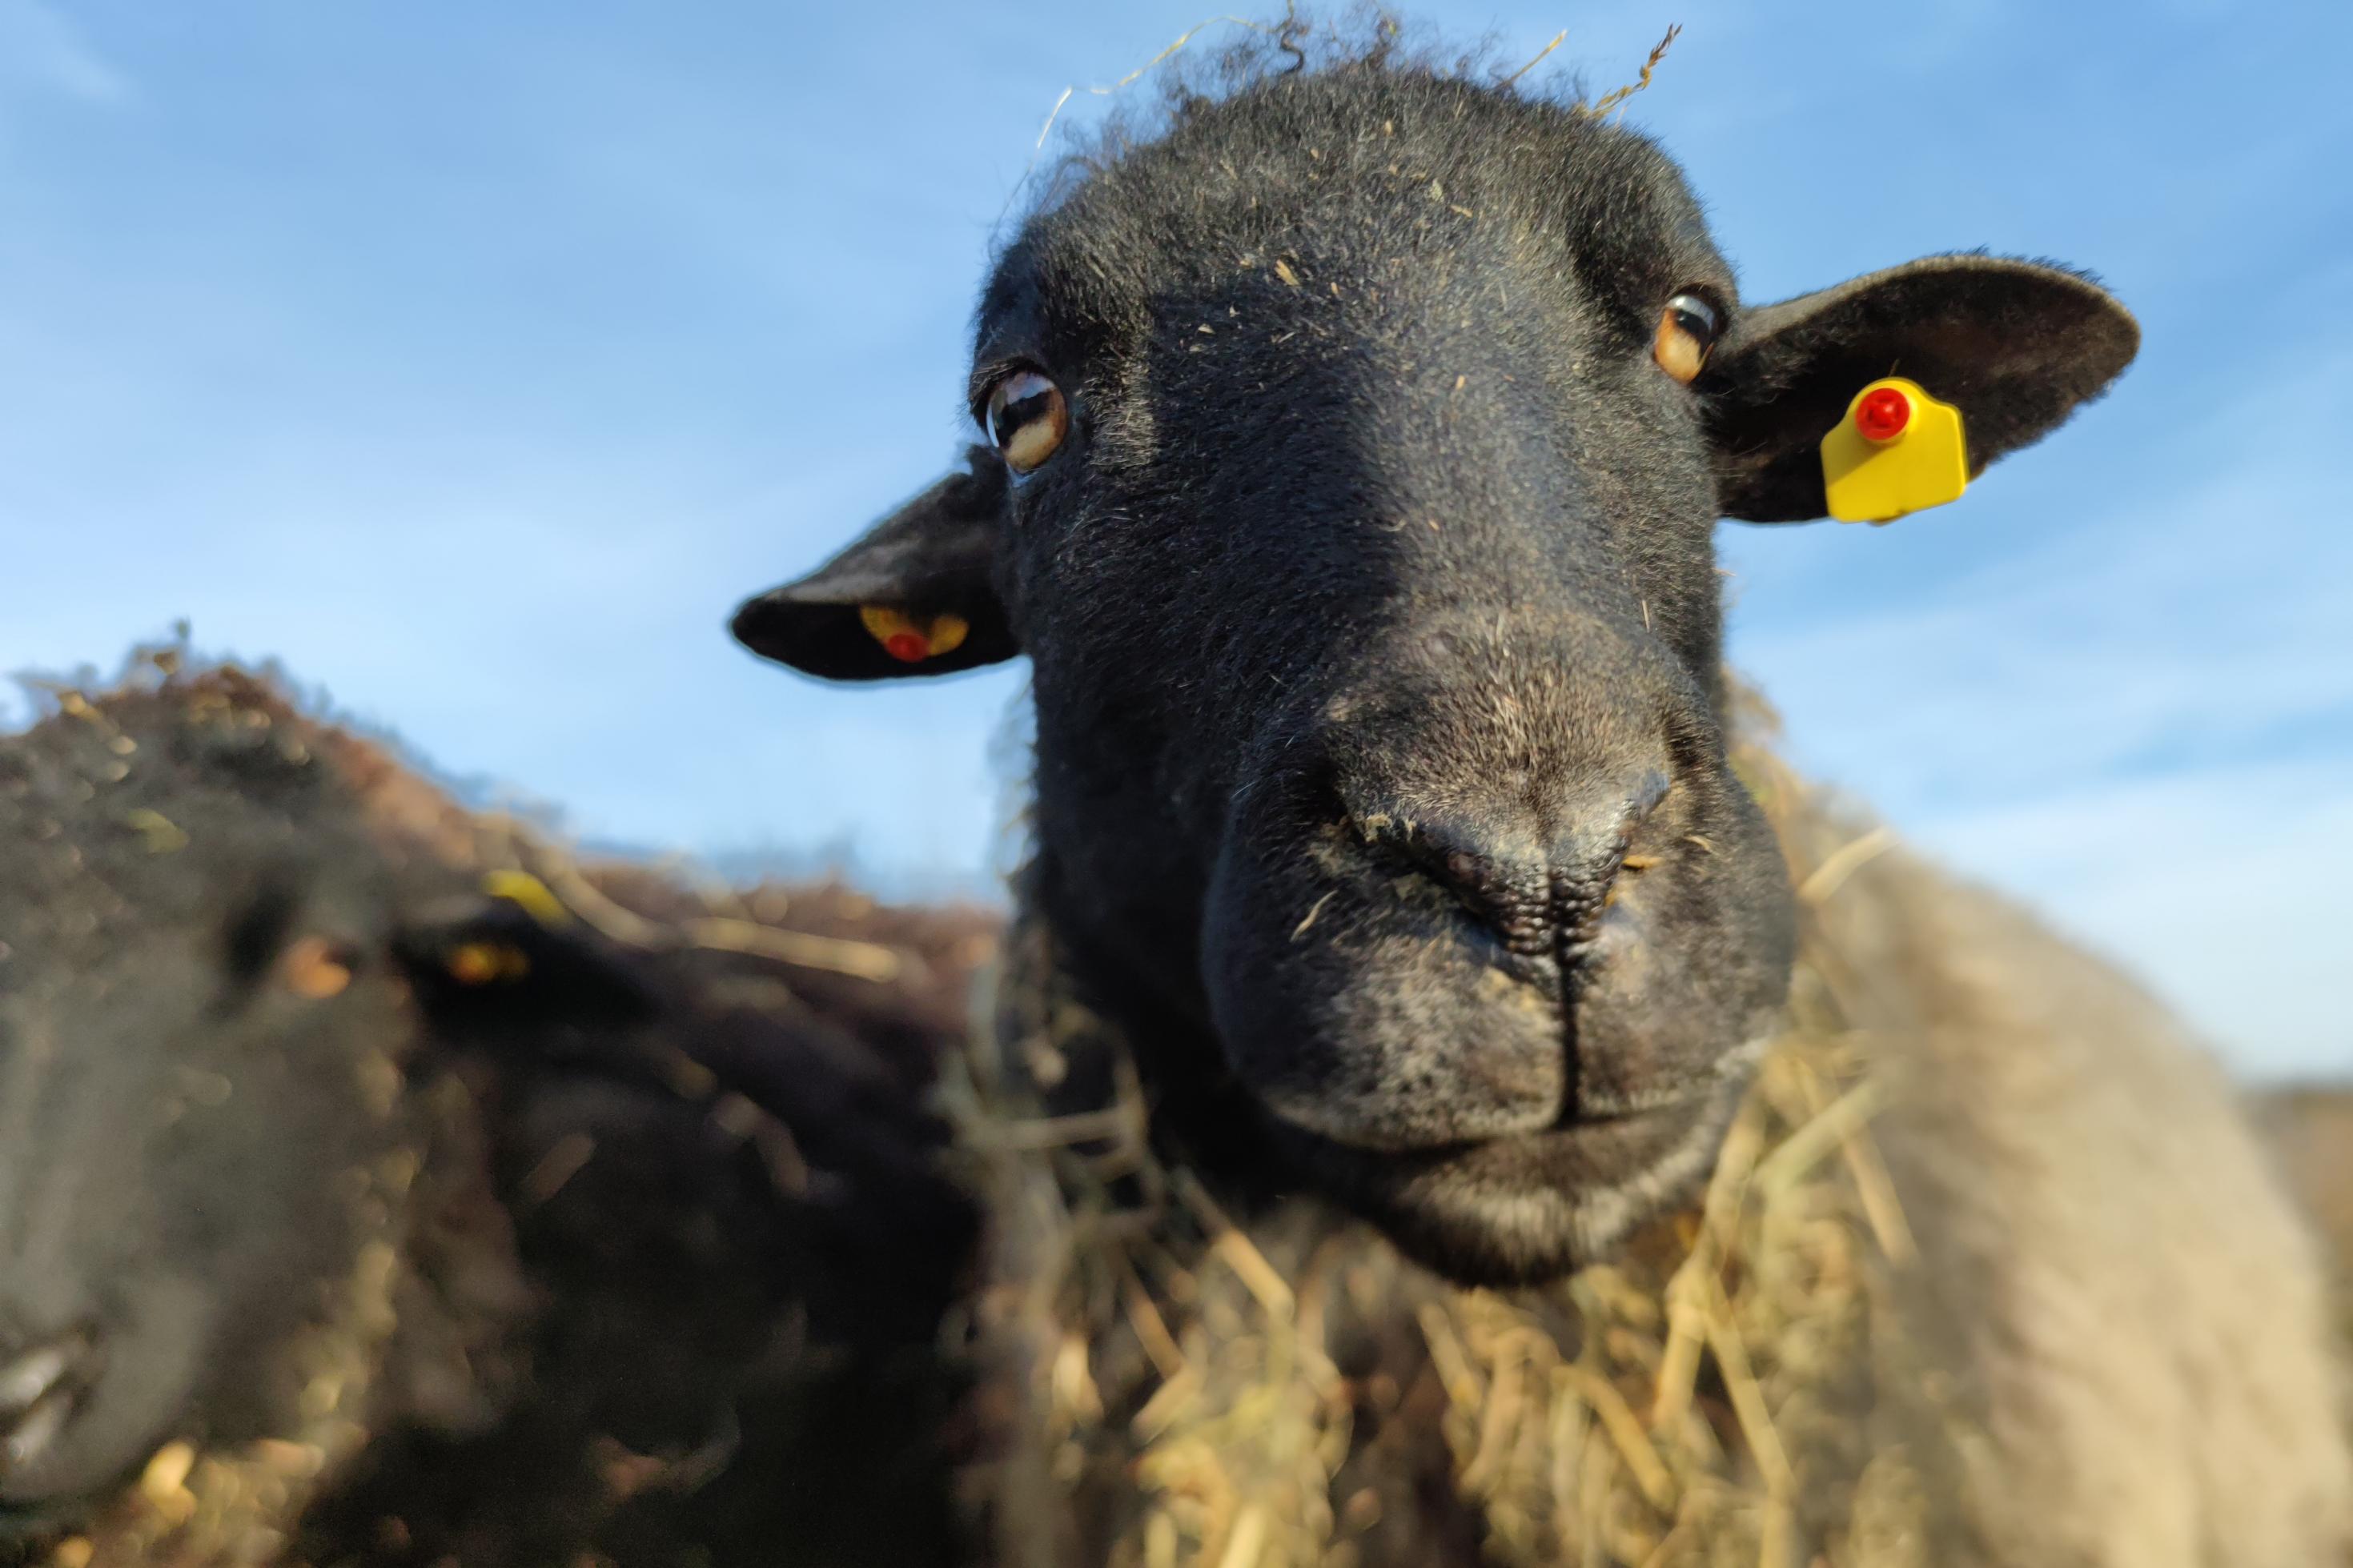 Ein Rauhwolliges Pommersches Landschaf hat einen schwarzen Kopf und blaugraue dichte Wolle. Dieses Schaf blickt aufmerksam in die Kamera